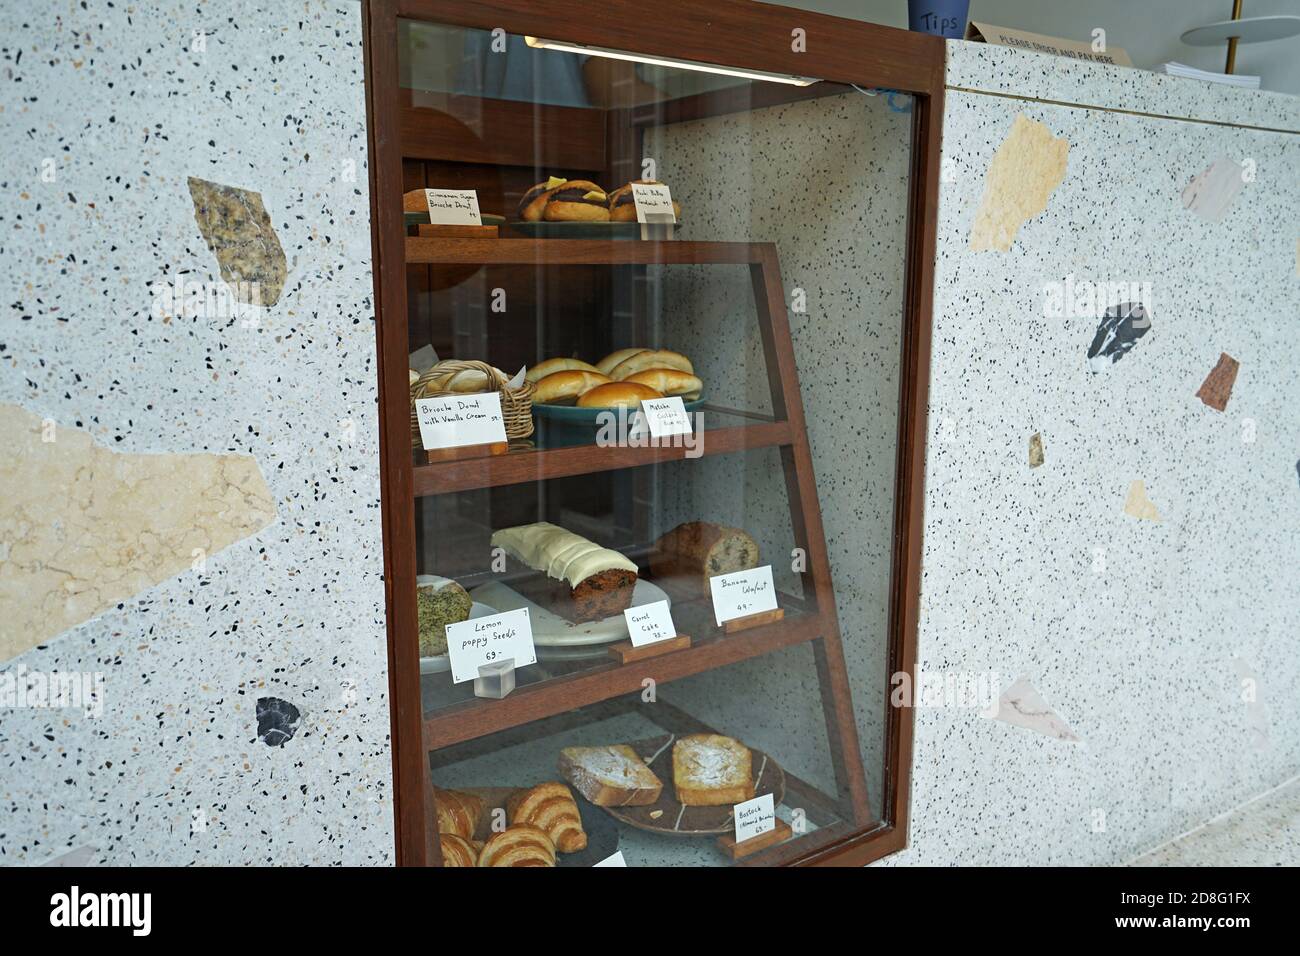 Présentoir de pâtisseries en bois et en marbre avec boîte de présentation : croissant au beurre, gâteau à la carotte, toast seedsม aux amandes et beignets au pavot au citron Banque D'Images